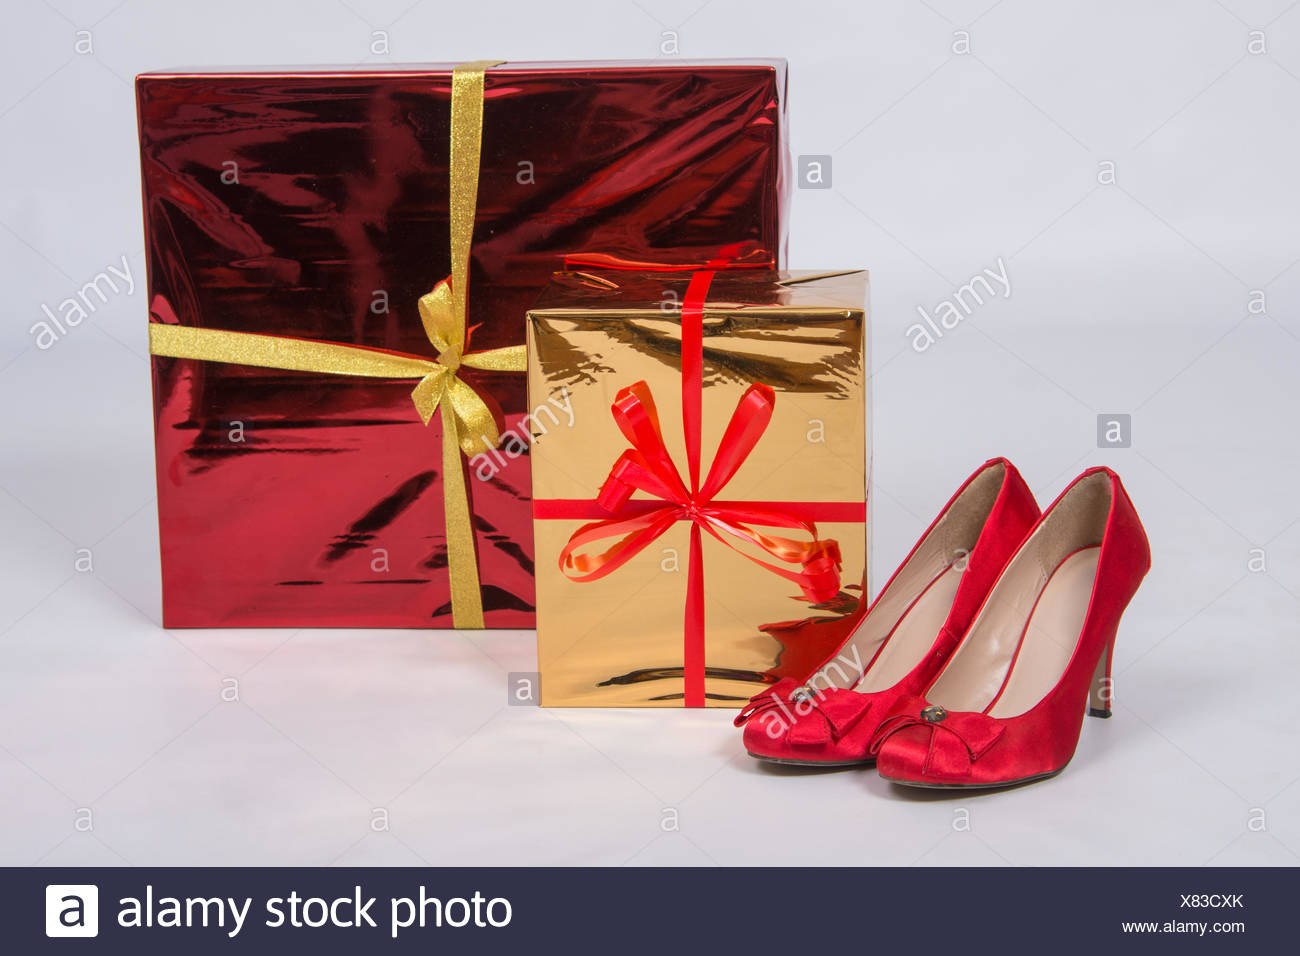 next red heels